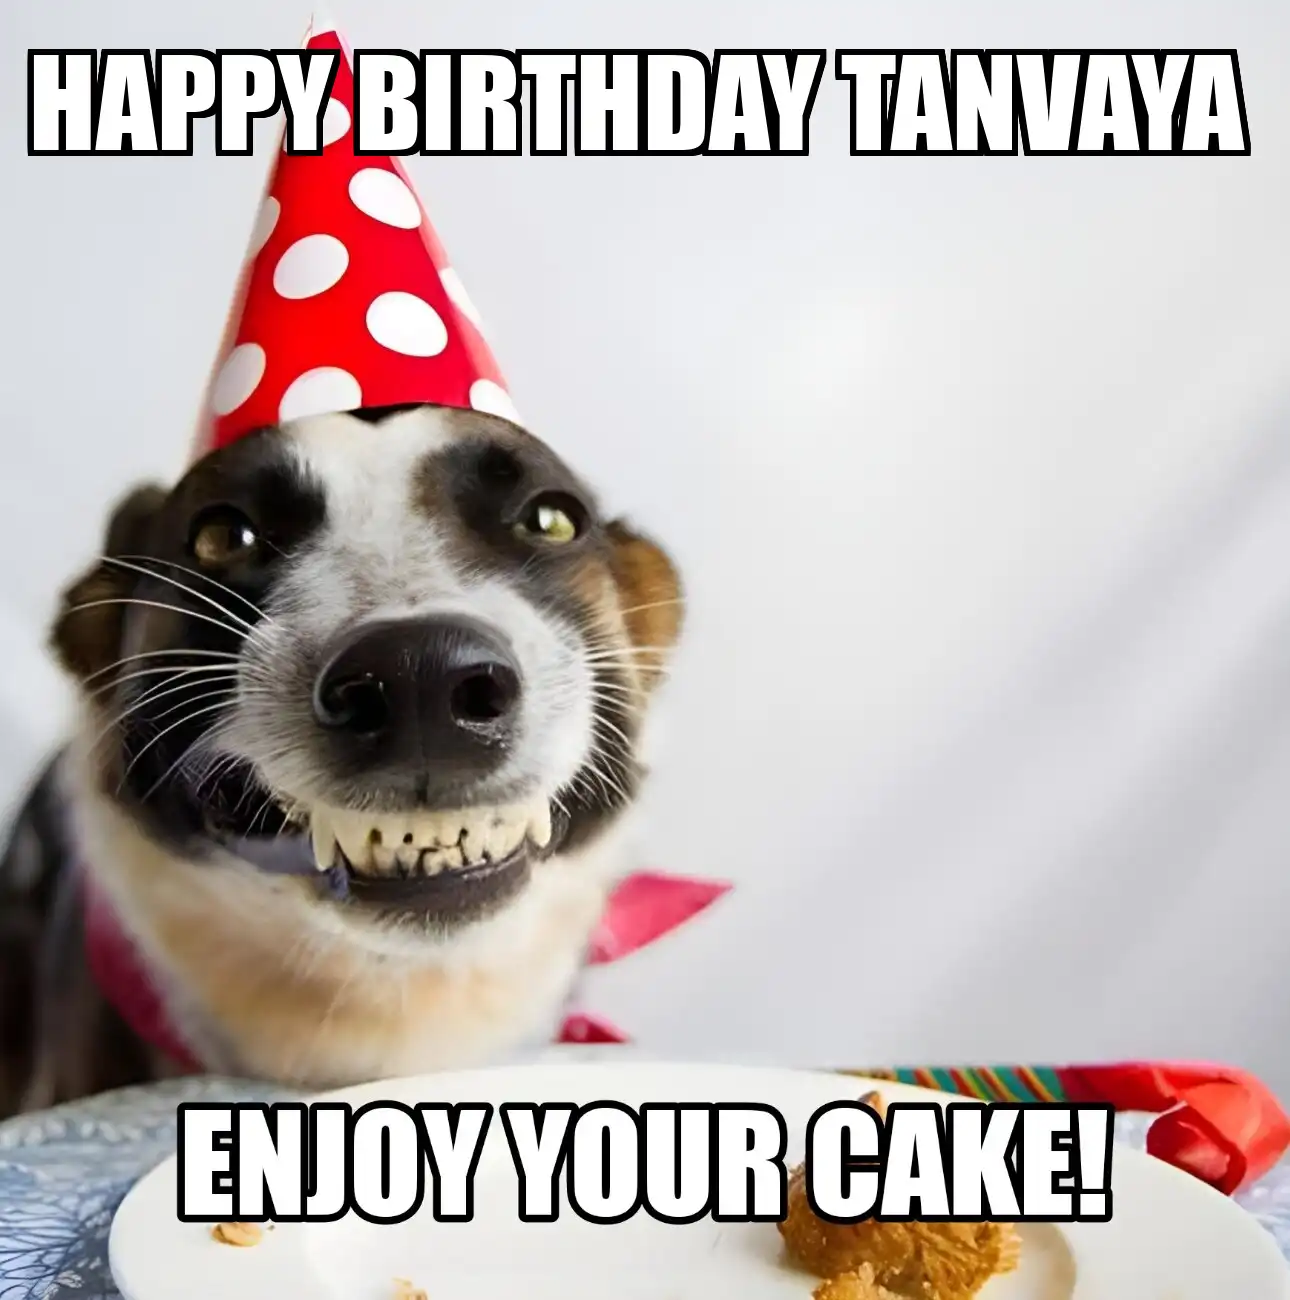 Happy Birthday Tanvaya Enjoy Your Cake Dog Meme